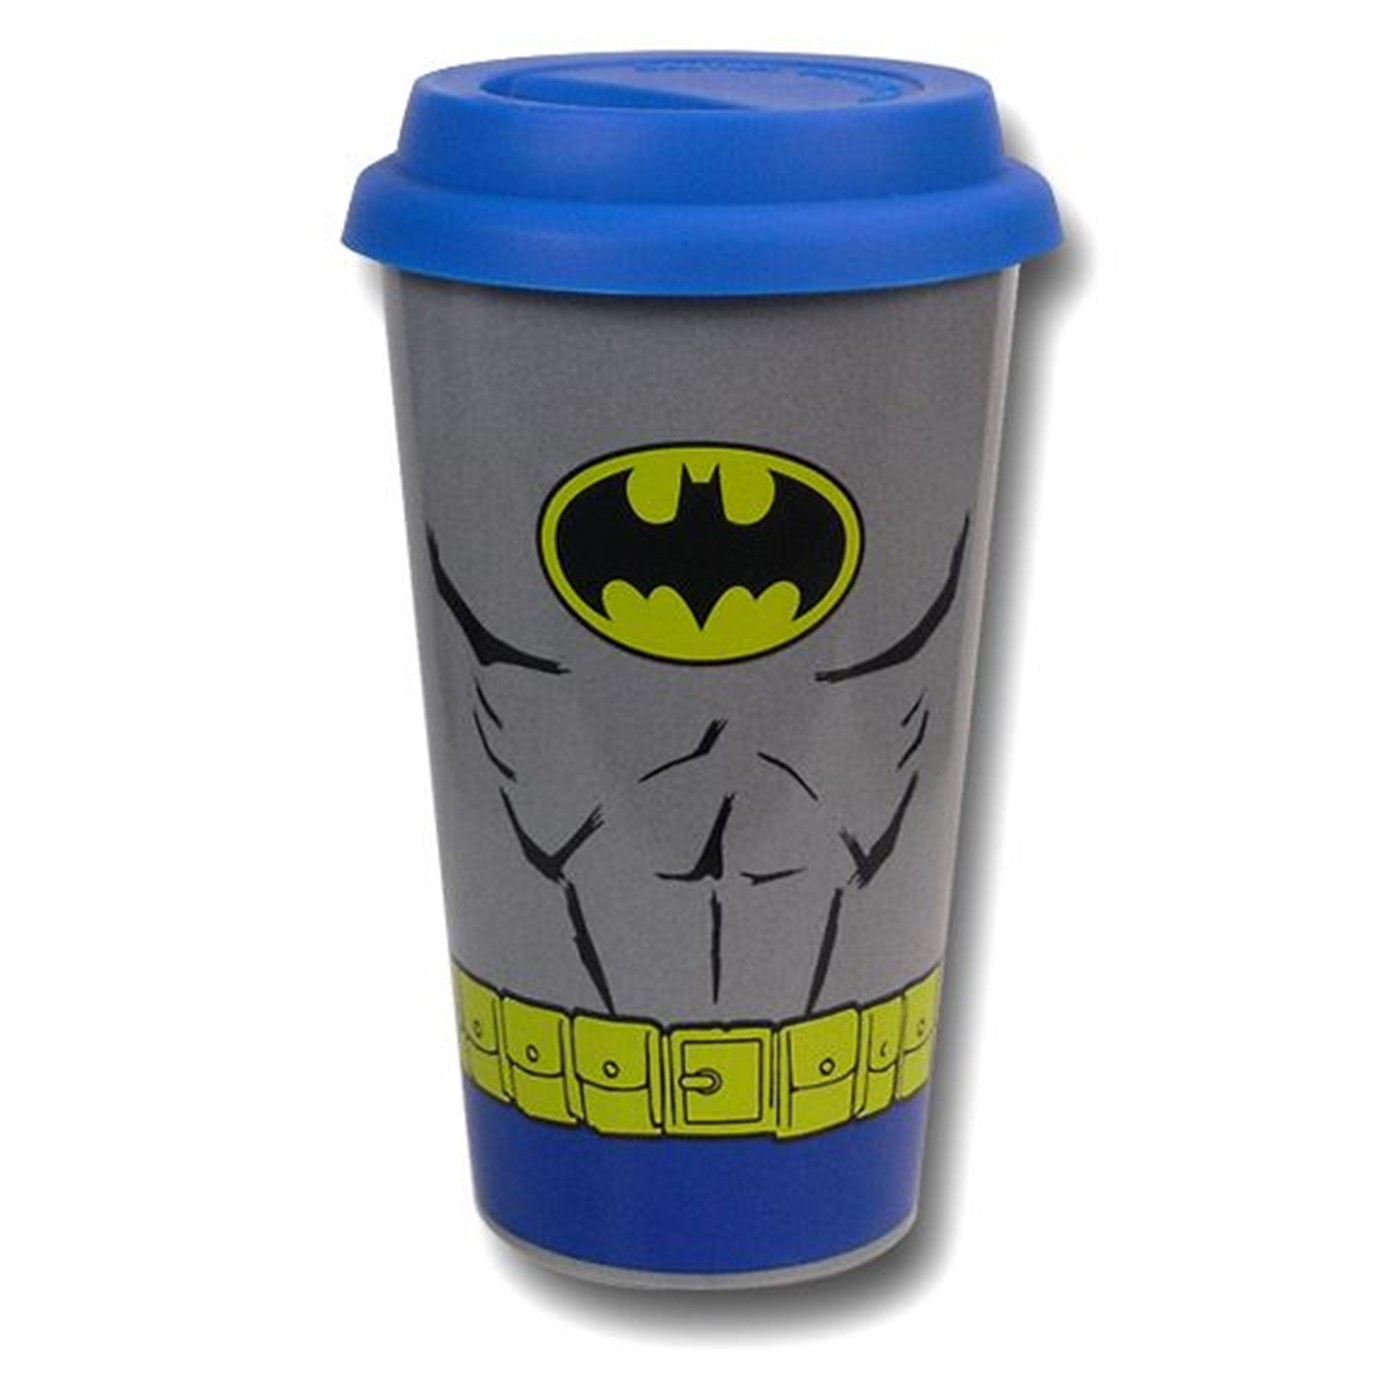 Batman Costume Ceramic Travel Mug